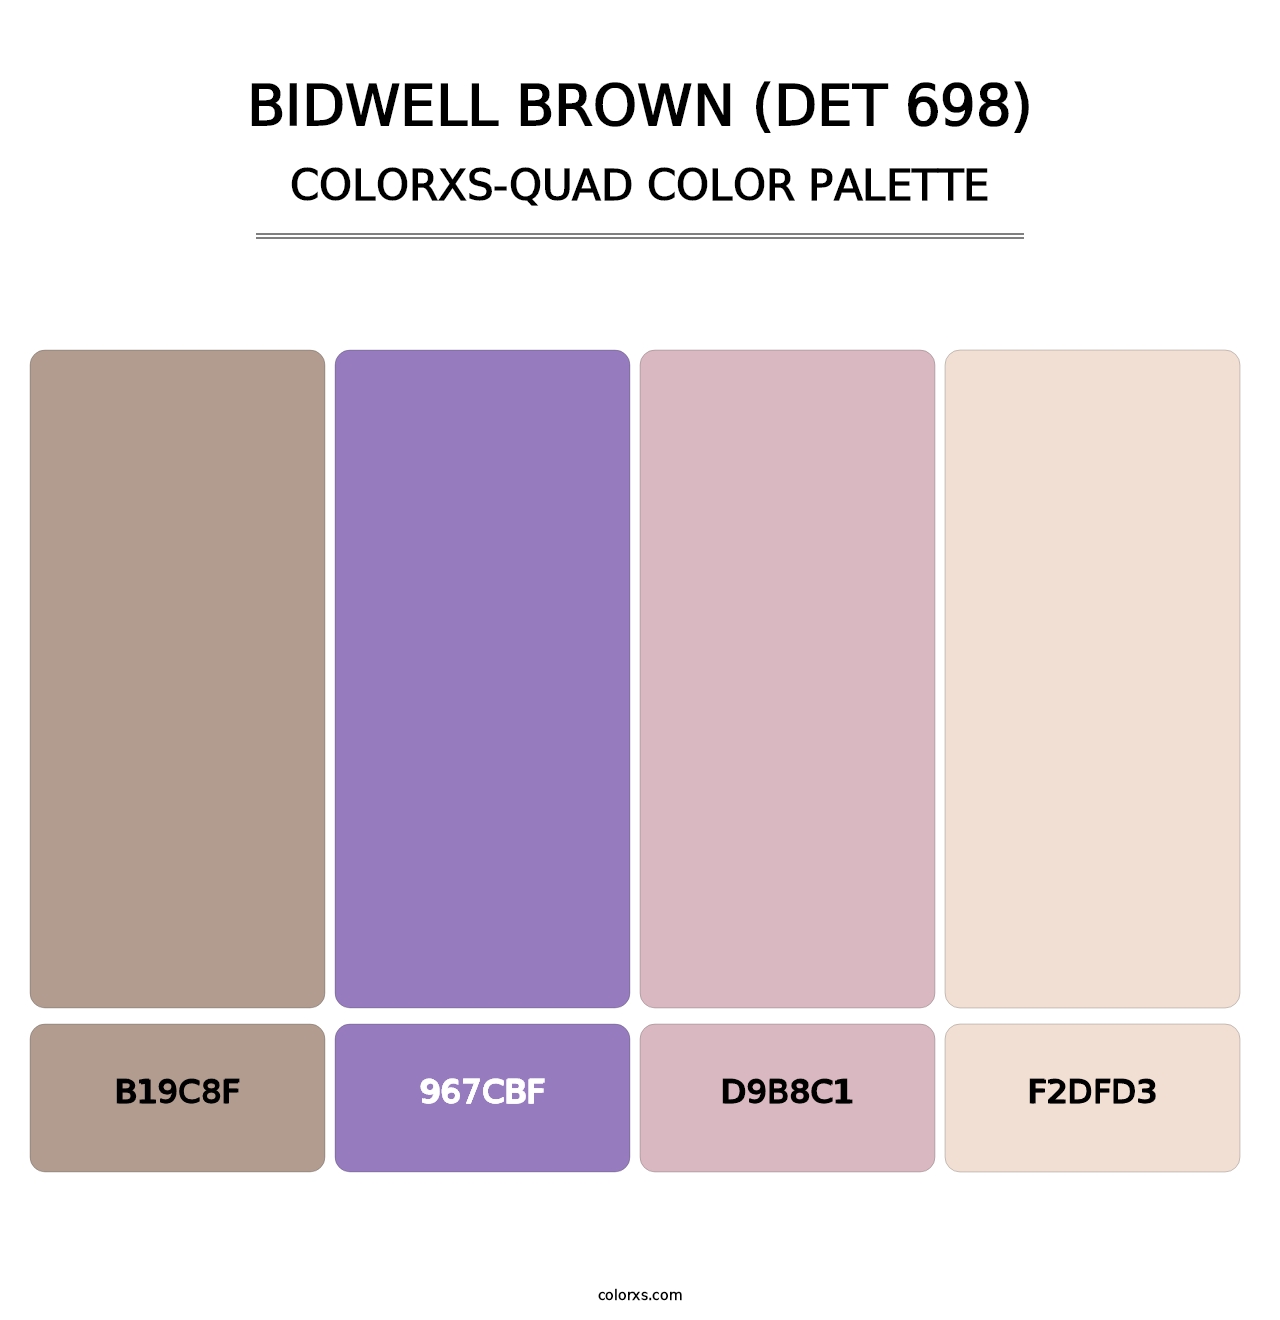 Bidwell Brown (DET 698) - Colorxs Quad Palette